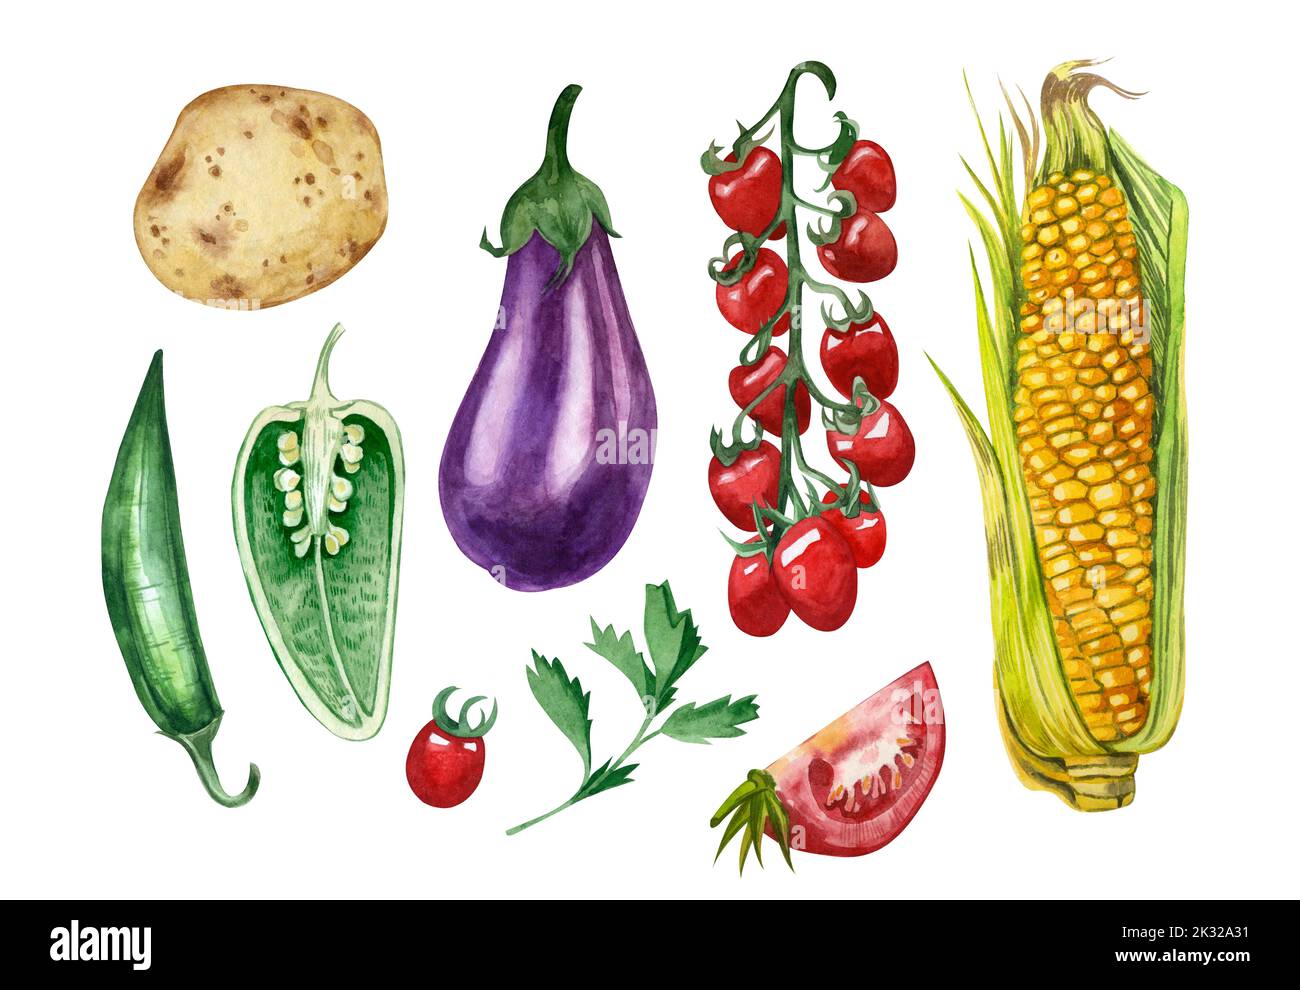 Una serie di verdure acquerello: Melanzane, pomodori ciliegini, mais, pepe, patate, prezzemolo dipinto a mano in acquerello su fondo bianco. Foto Stock